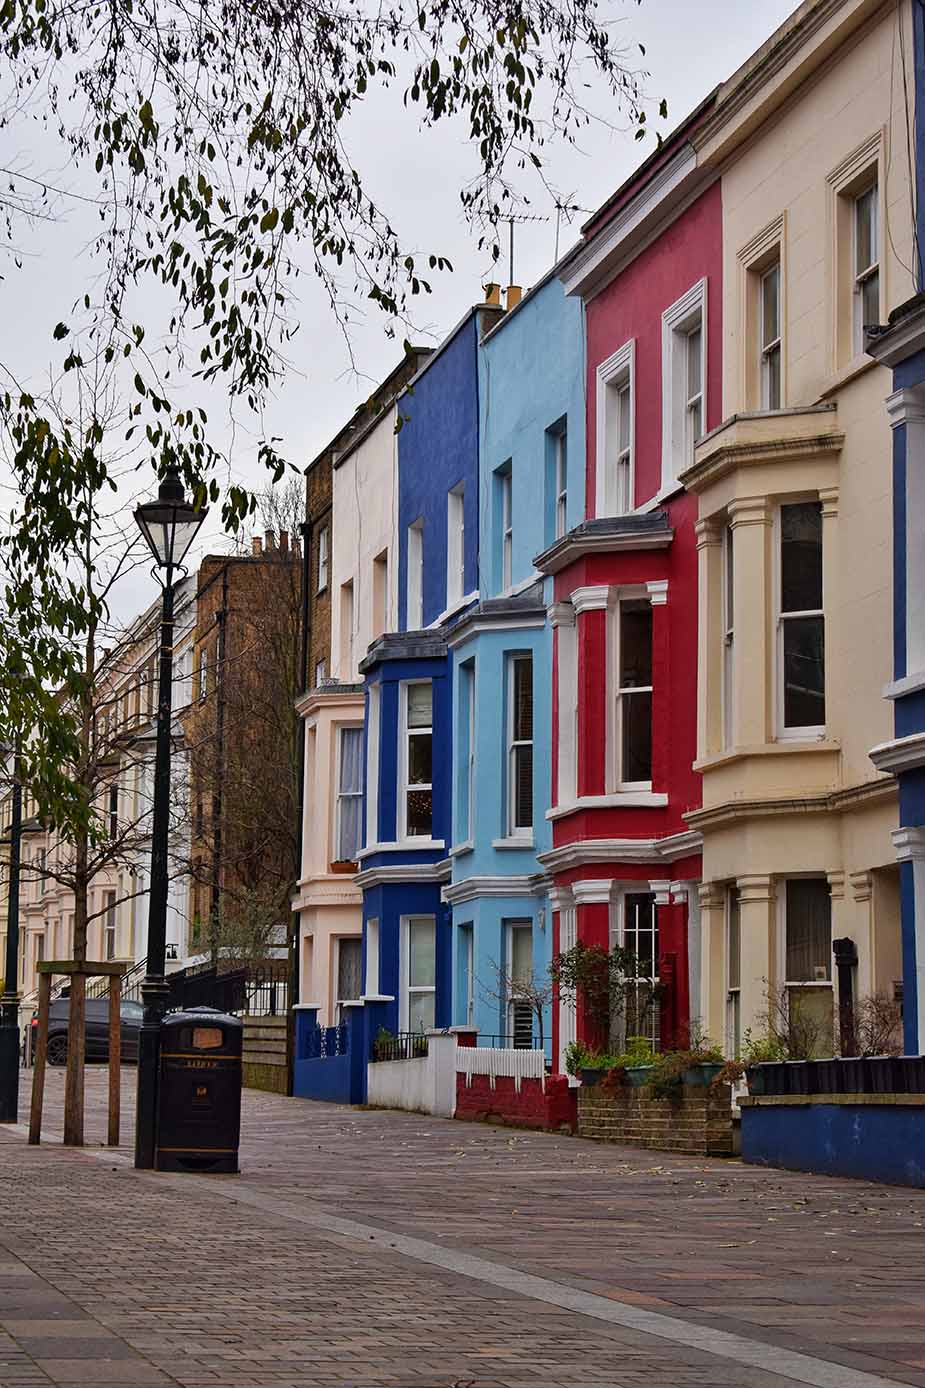 Gekleurde huizen in Notting Hill